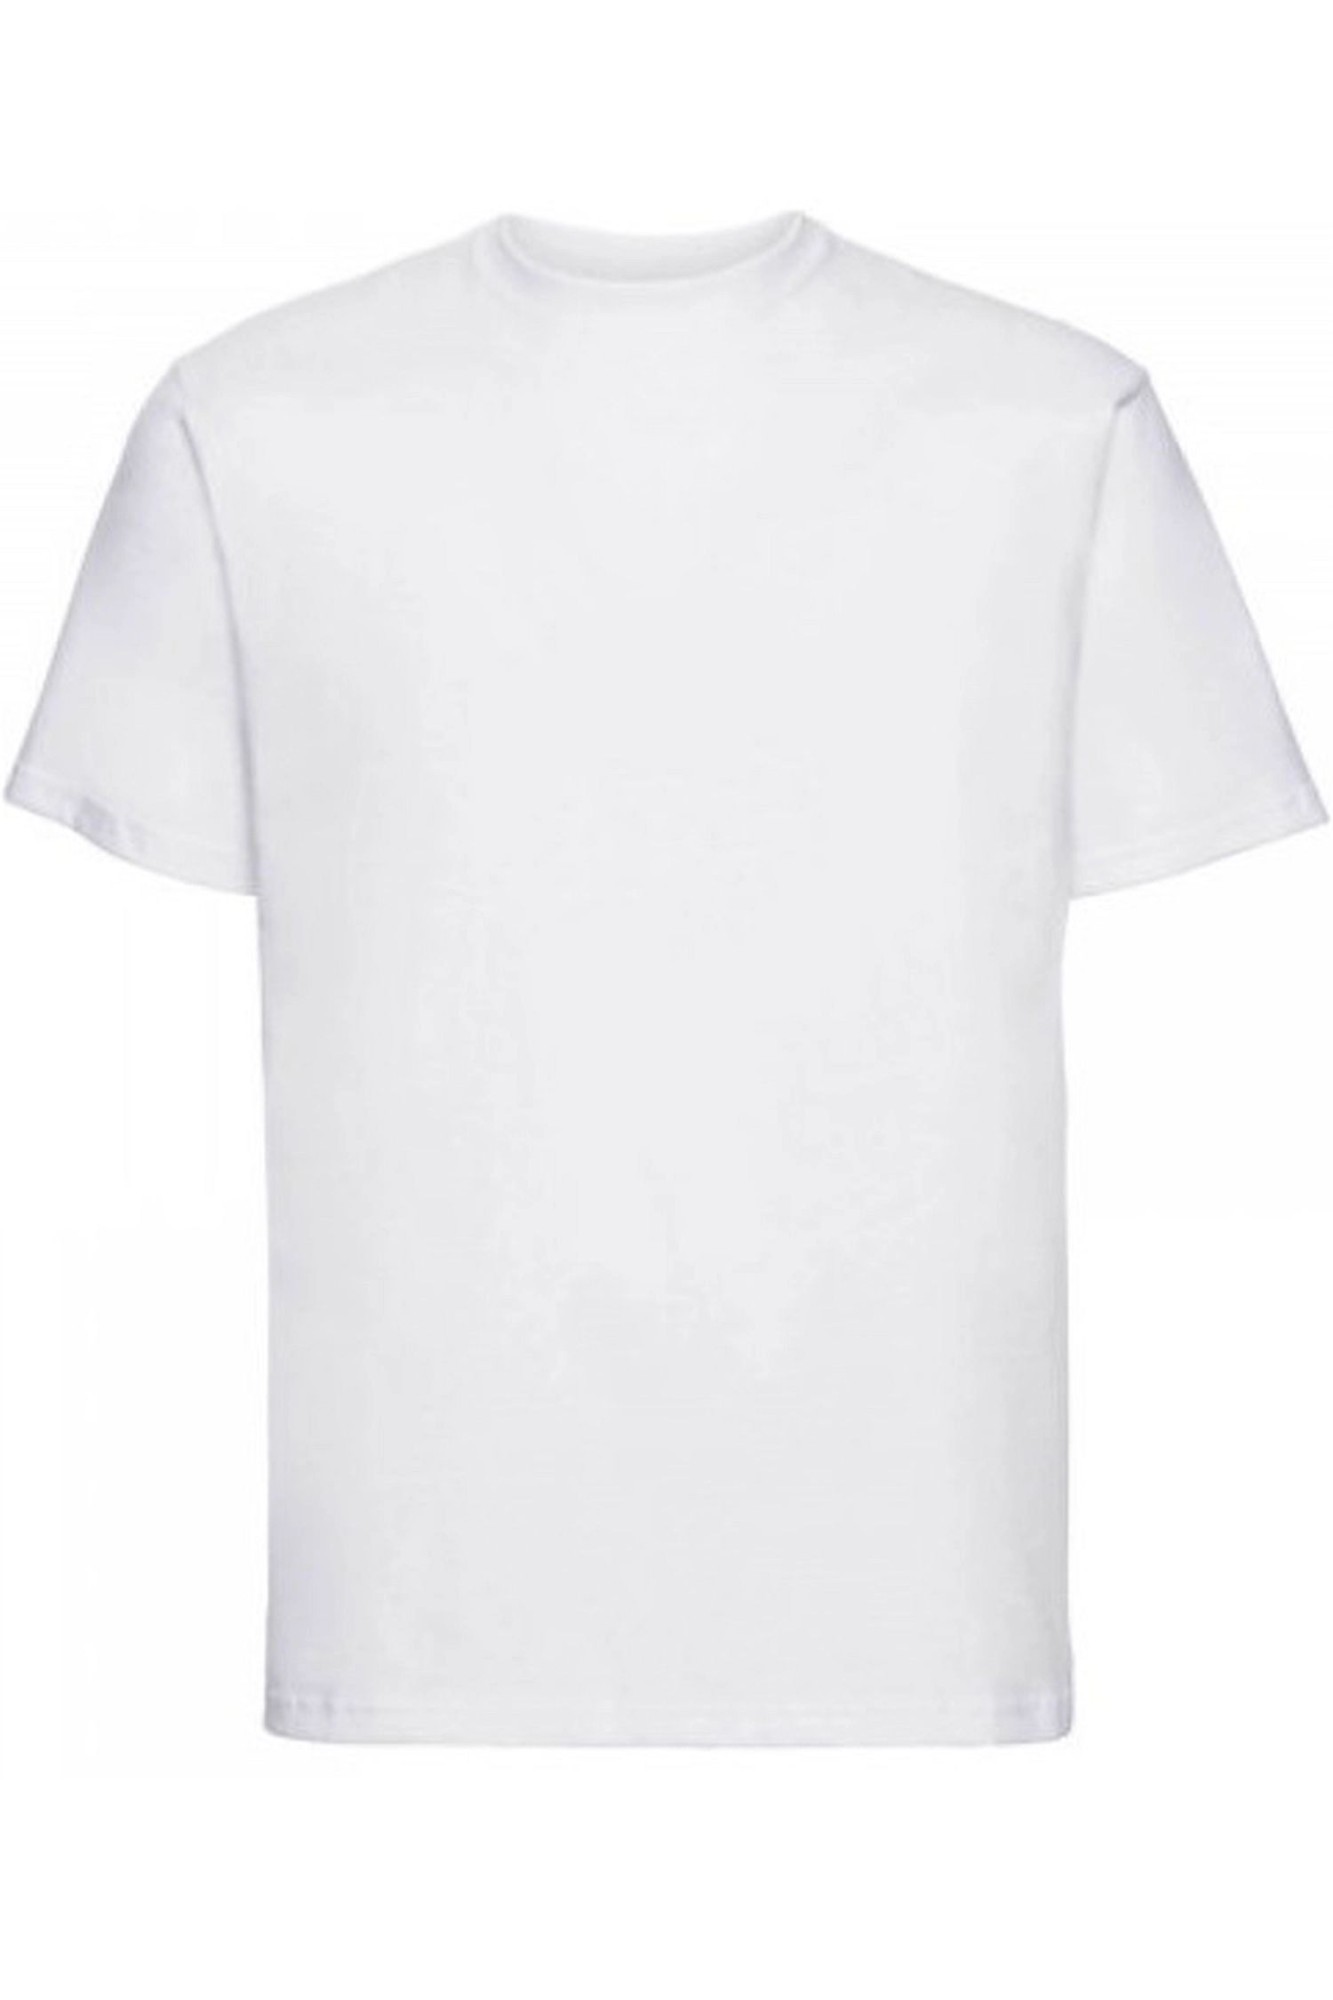 Pánské tričko 002 white - NOVITI Bílá M